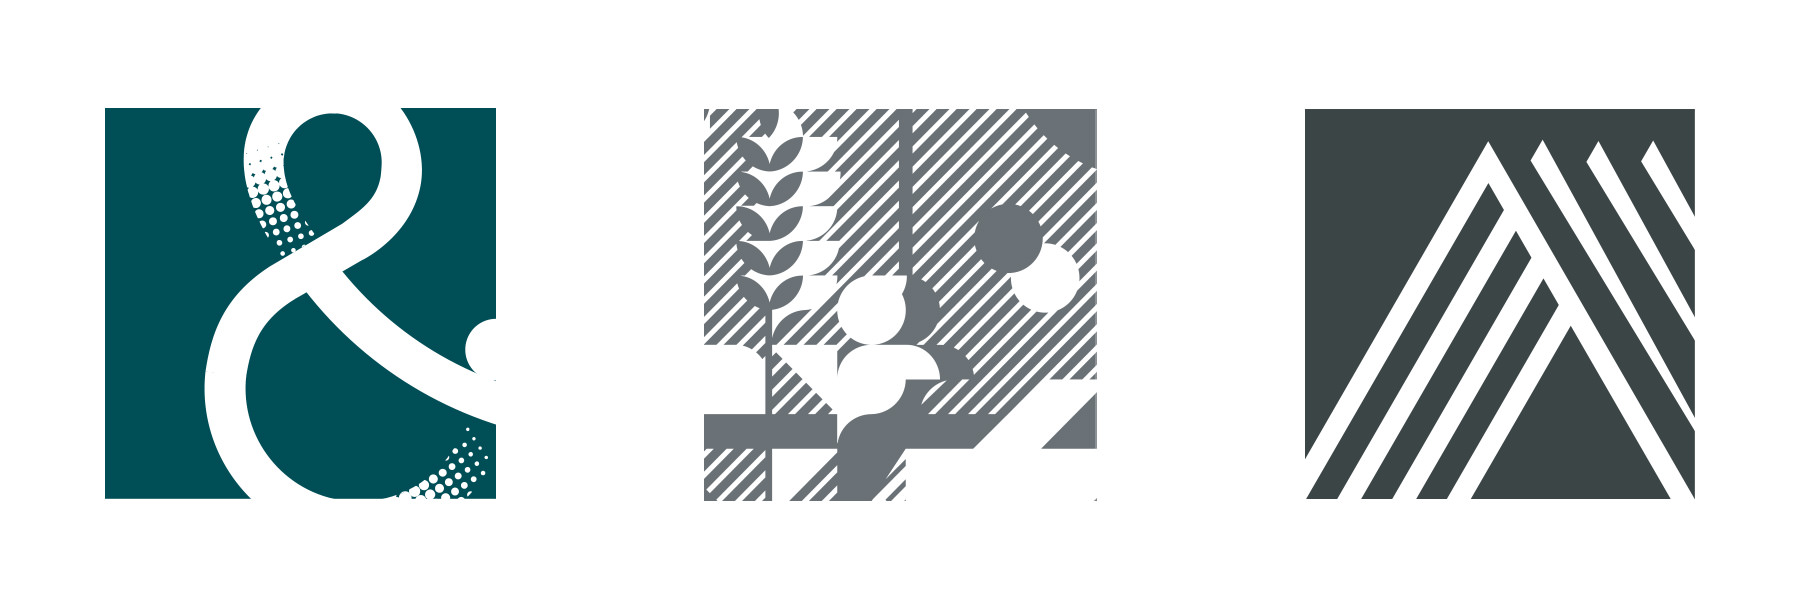 Logo-Projekte in 2021 für Selbstständige und kleine Unternehmen